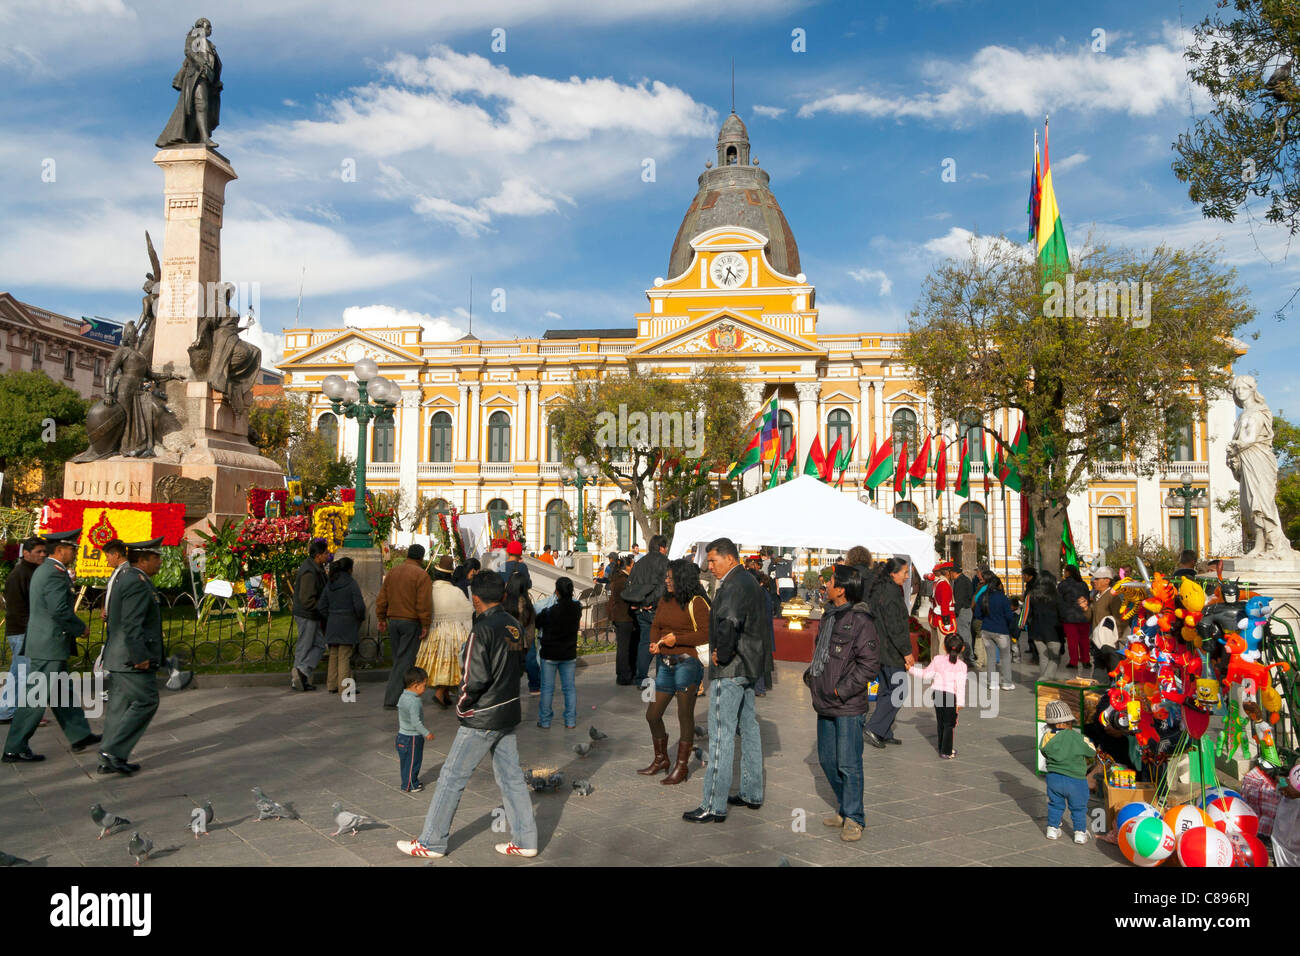 Plaza Murillo, La Paz main square, Bolivia, with loads going on, Congreso nacional in background Stock Photo